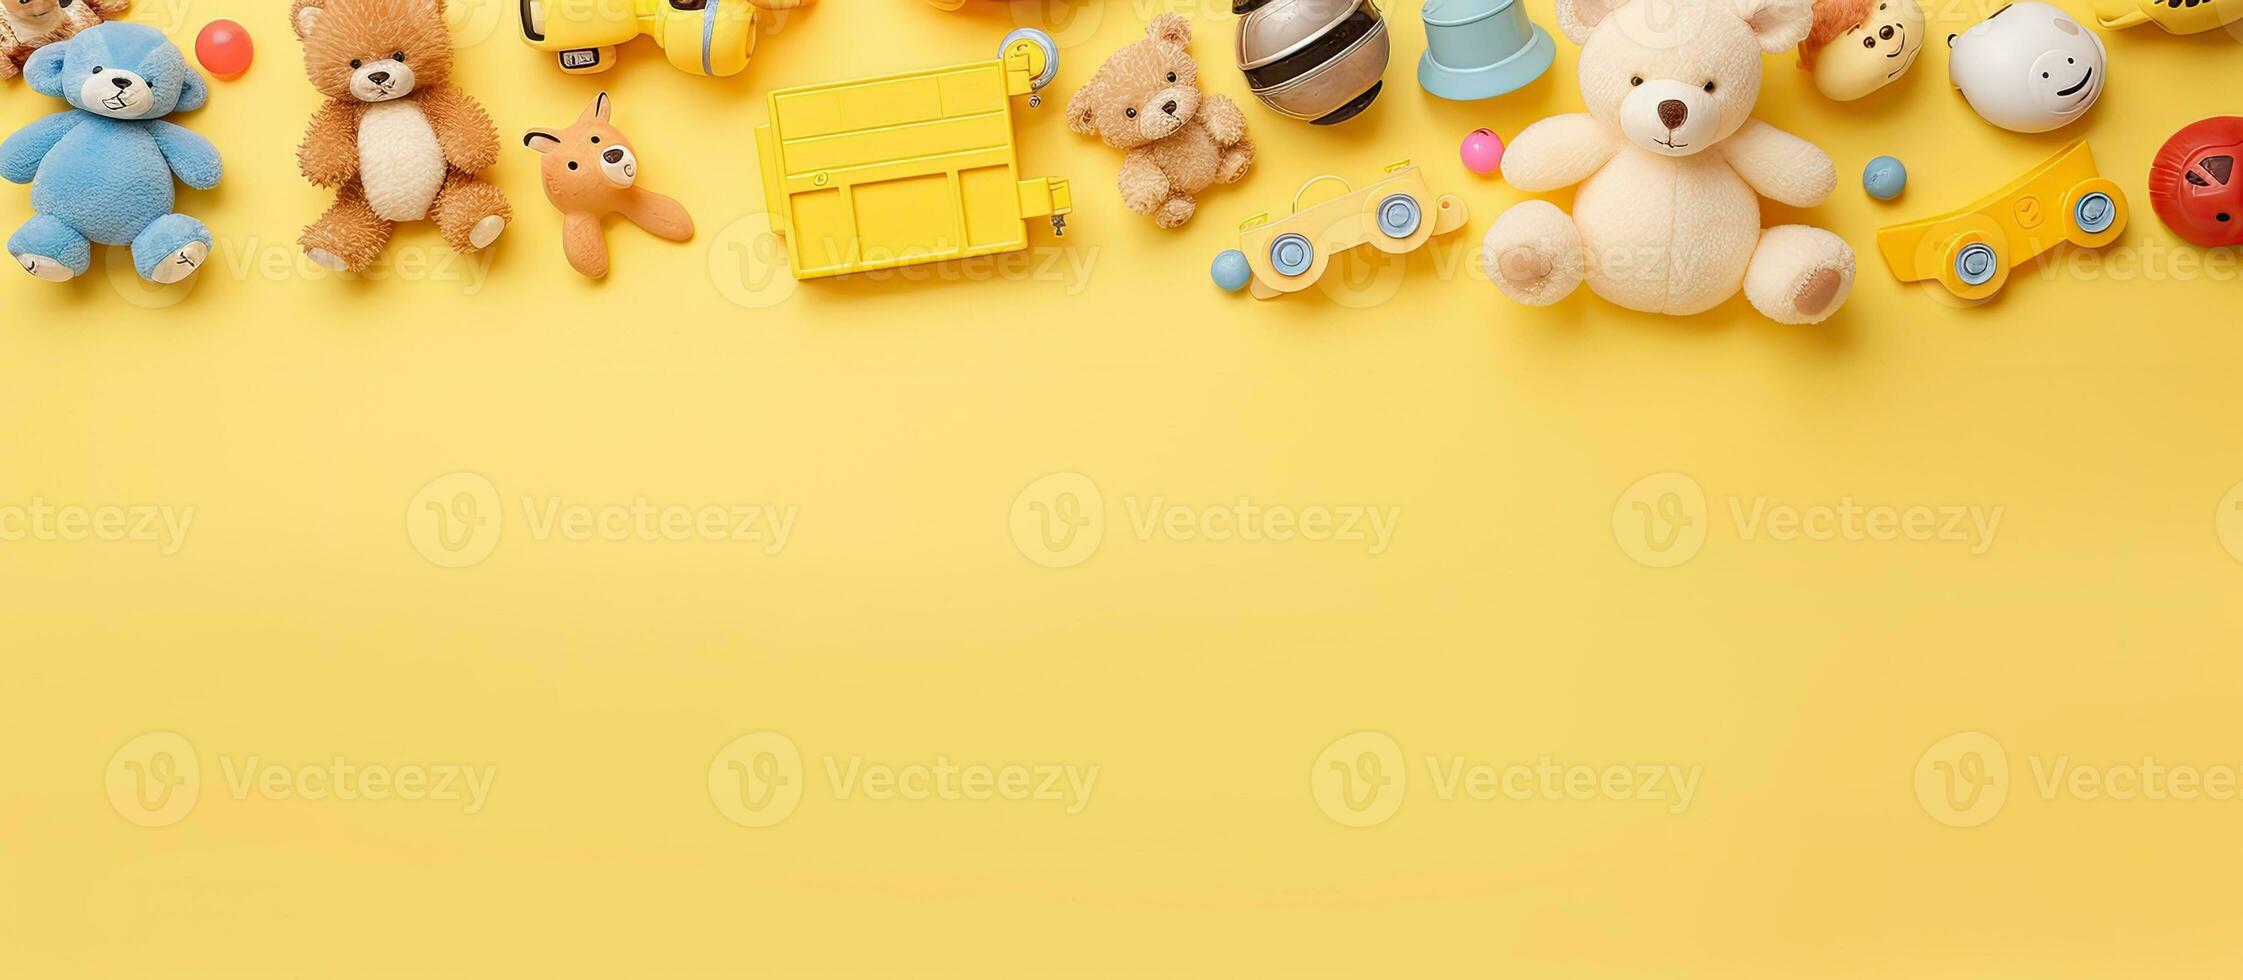 coleção do bebê e crianças brinquedos colocada em uma pastel amarelo fundo. a fotografia é ocupado foto